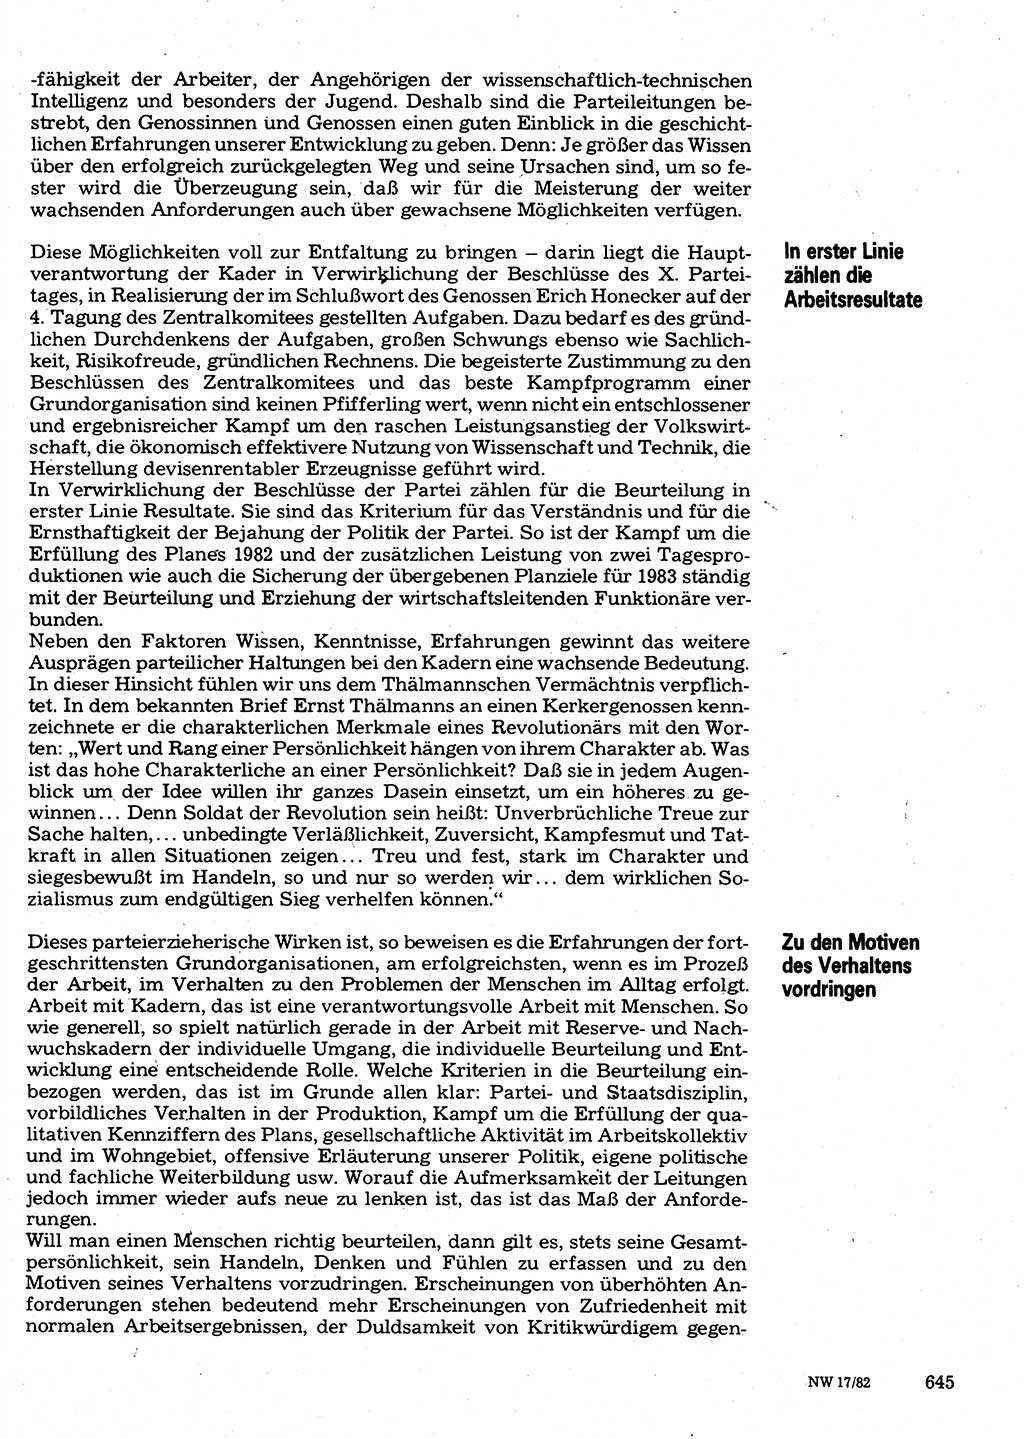 Neuer Weg (NW), Organ des Zentralkomitees (ZK) der SED (Sozialistische Einheitspartei Deutschlands) für Fragen des Parteilebens, 37. Jahrgang [Deutsche Demokratische Republik (DDR)] 1982, Seite 645 (NW ZK SED DDR 1982, S. 645)